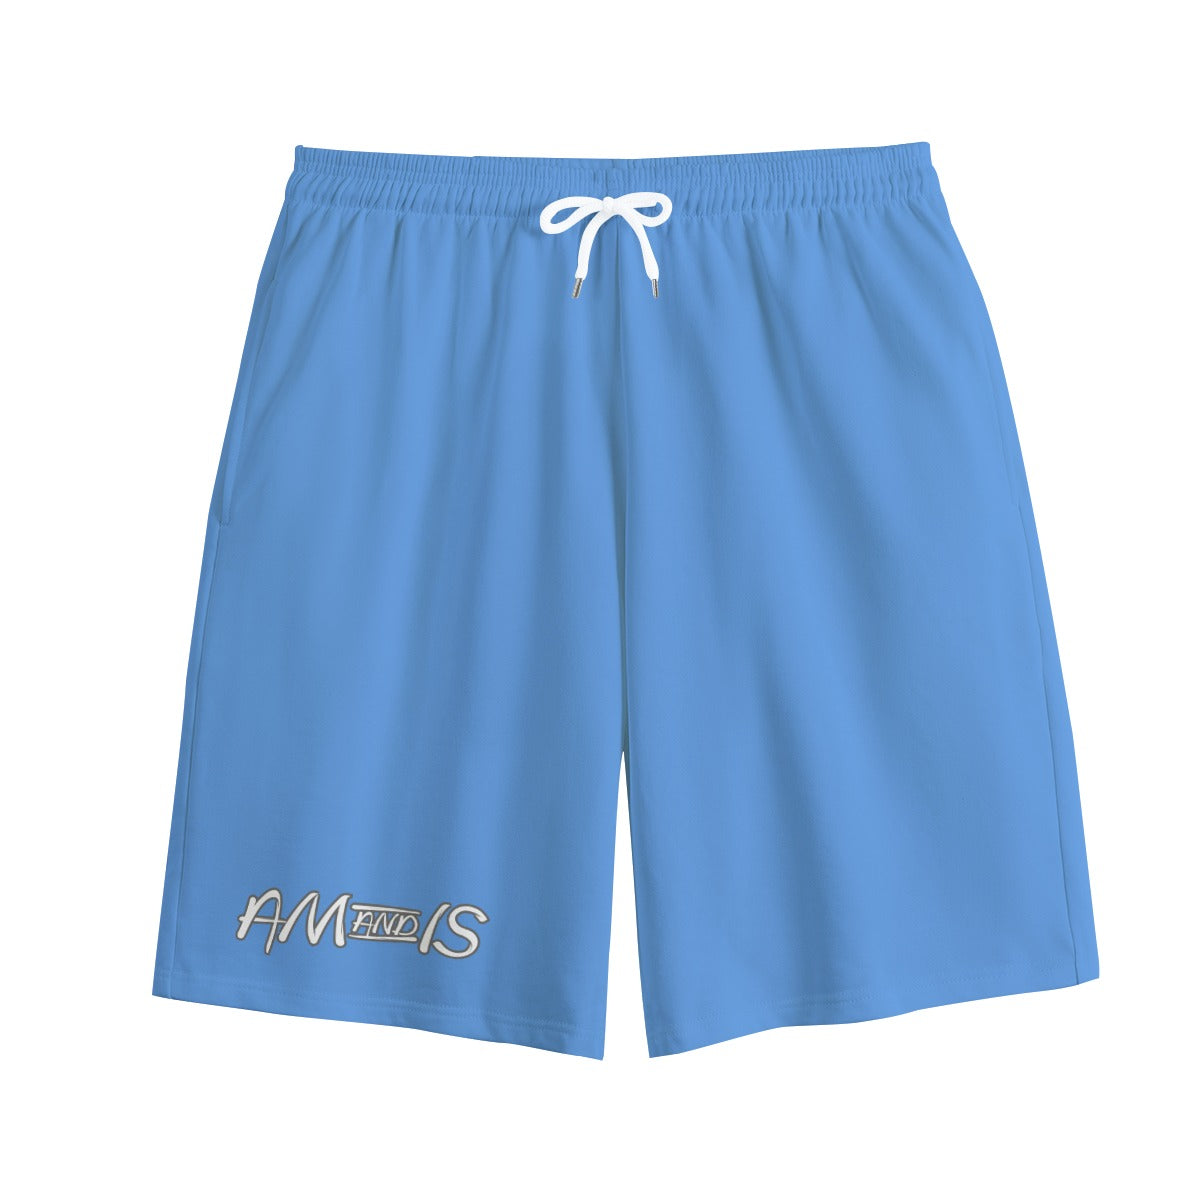 North Carolina Blue - AM&IS Men's Carolina Blue Shorts | 100% Cotton - mens shorts at TFC&H Co.